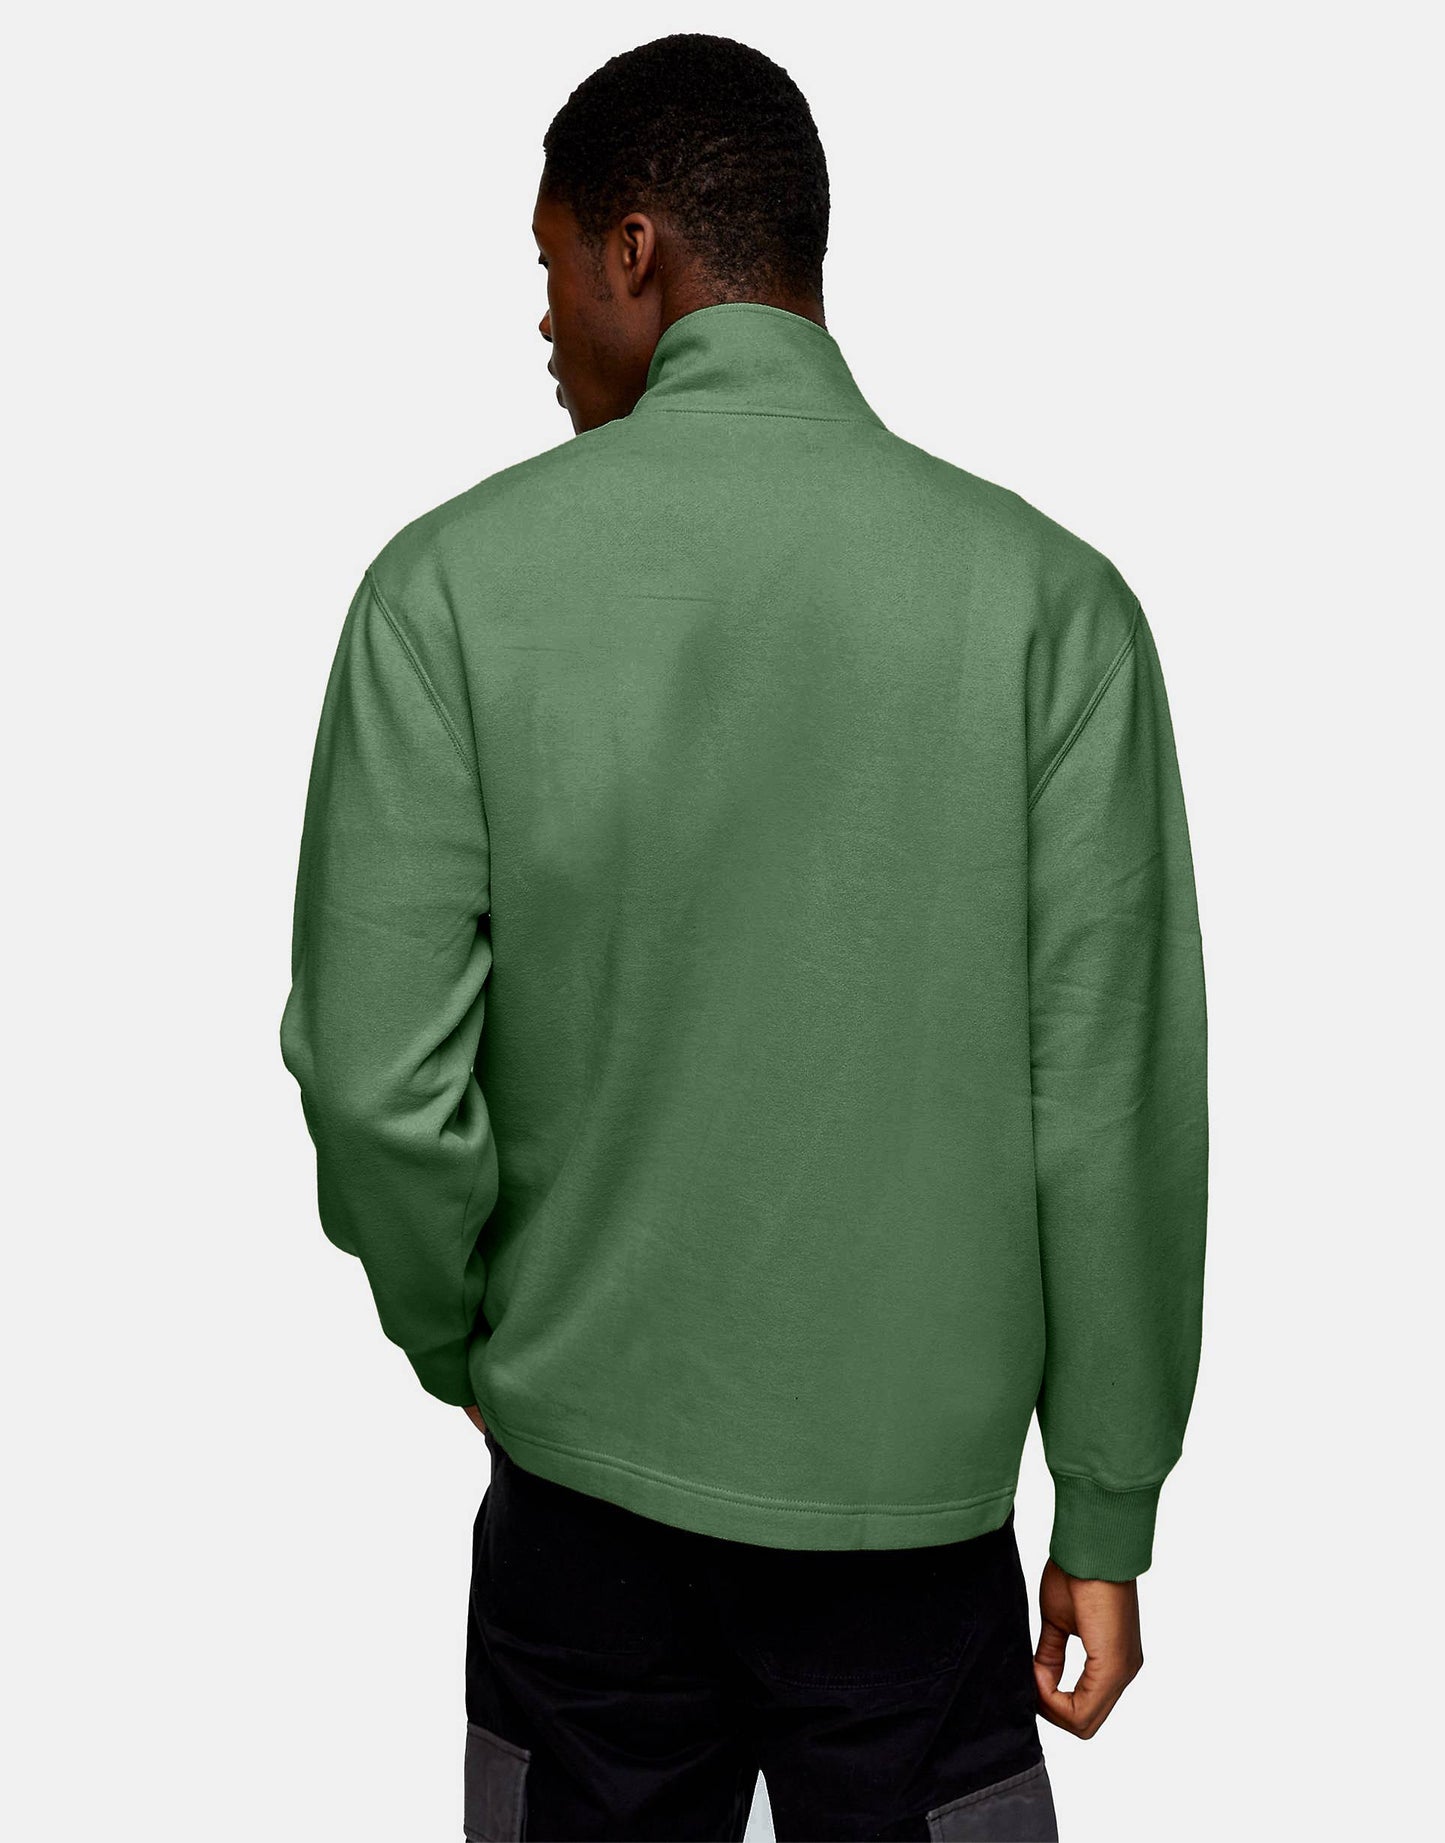 Hemsters Moss Green Zip Sweatshirt For Mens